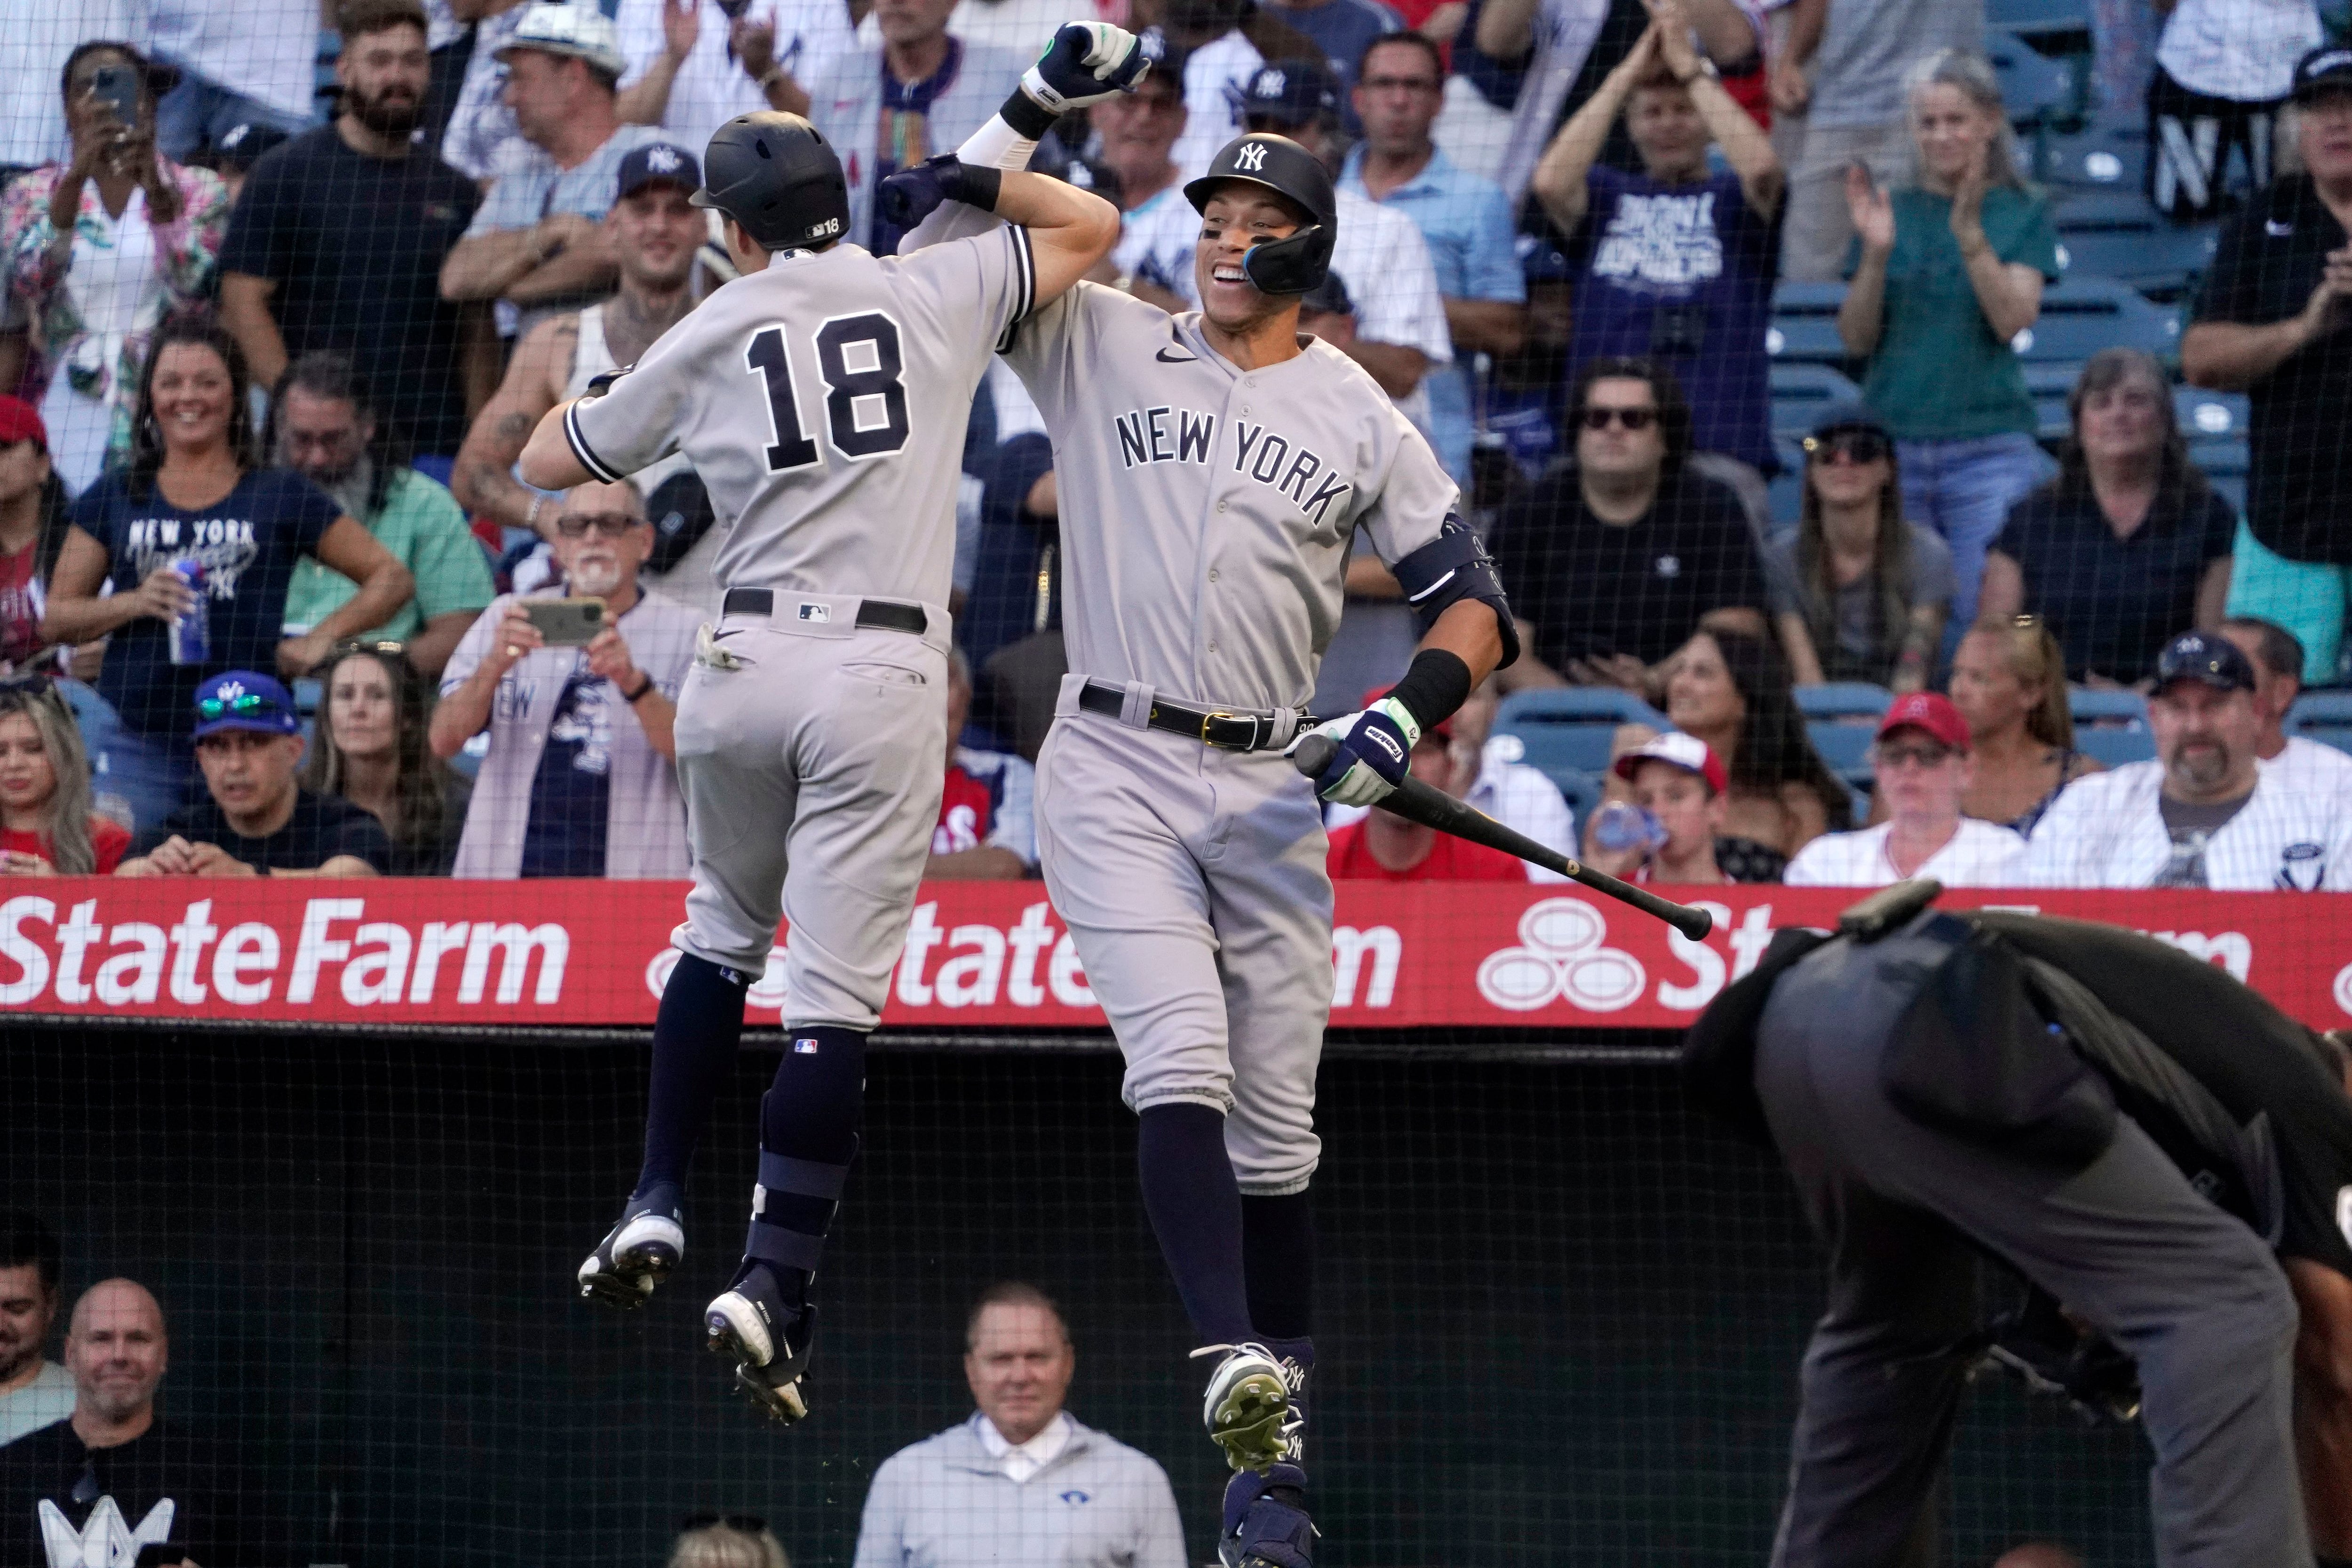 Judge hits 51st HR as Yankees snap skid, top Angels 7-4